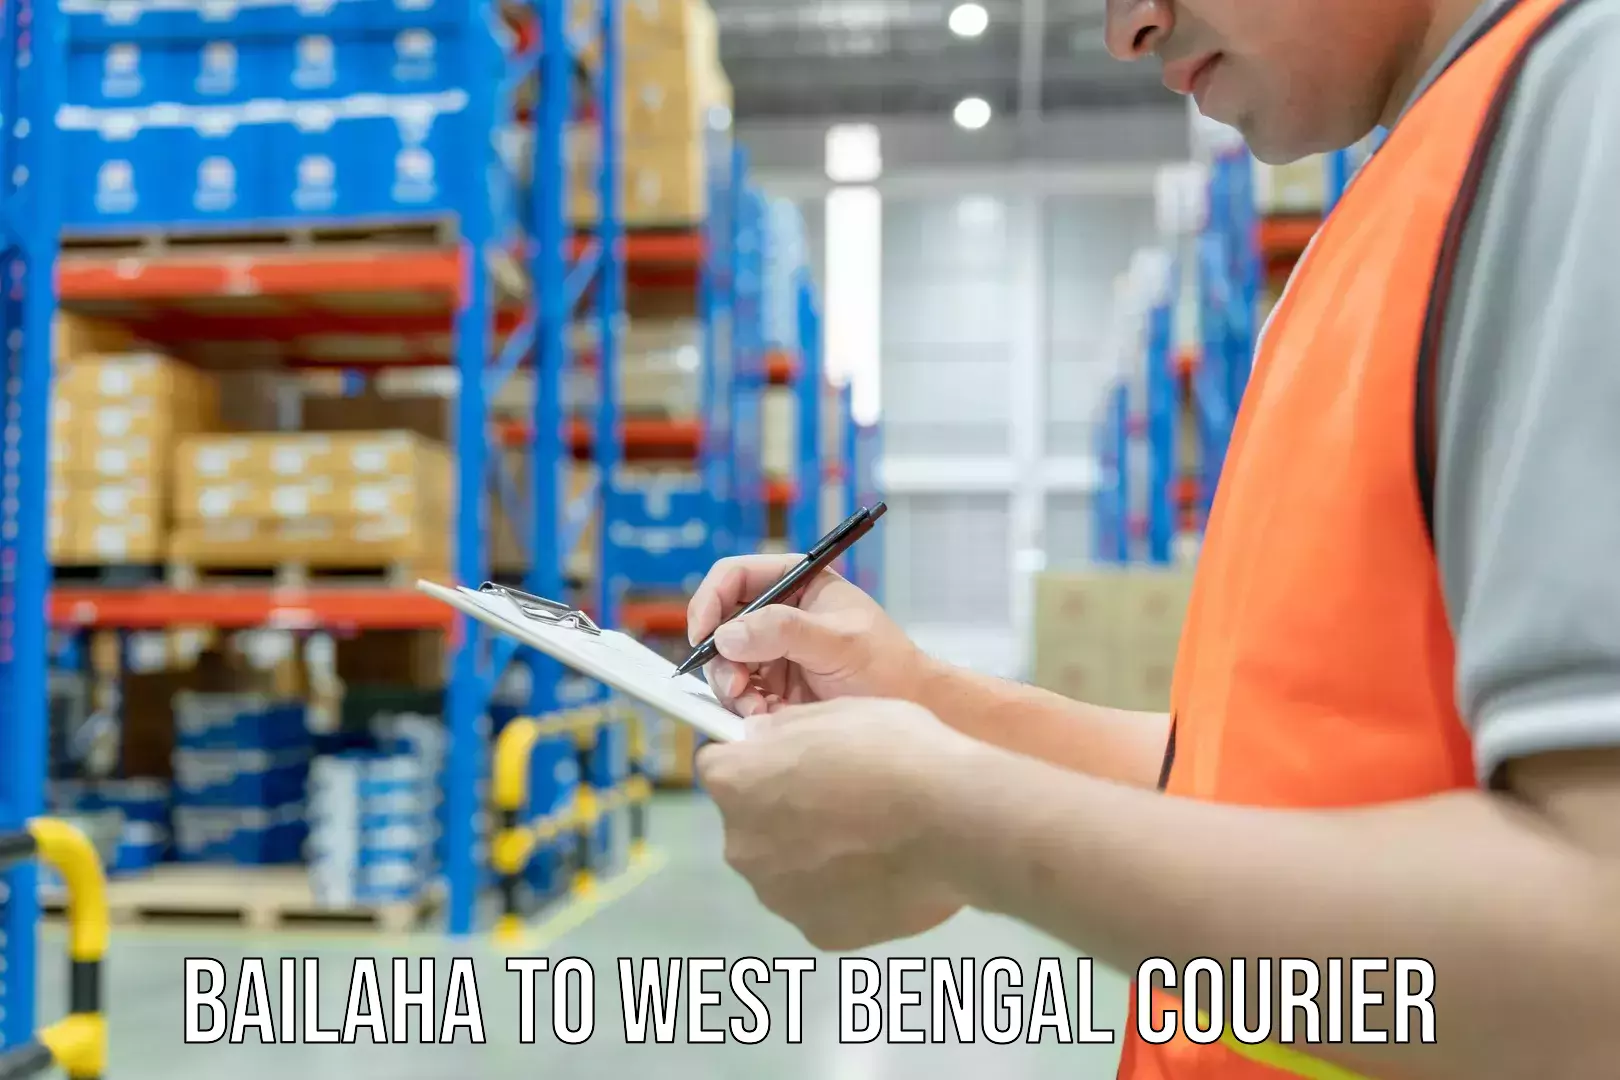 Courier service comparison Bailaha to West Bengal